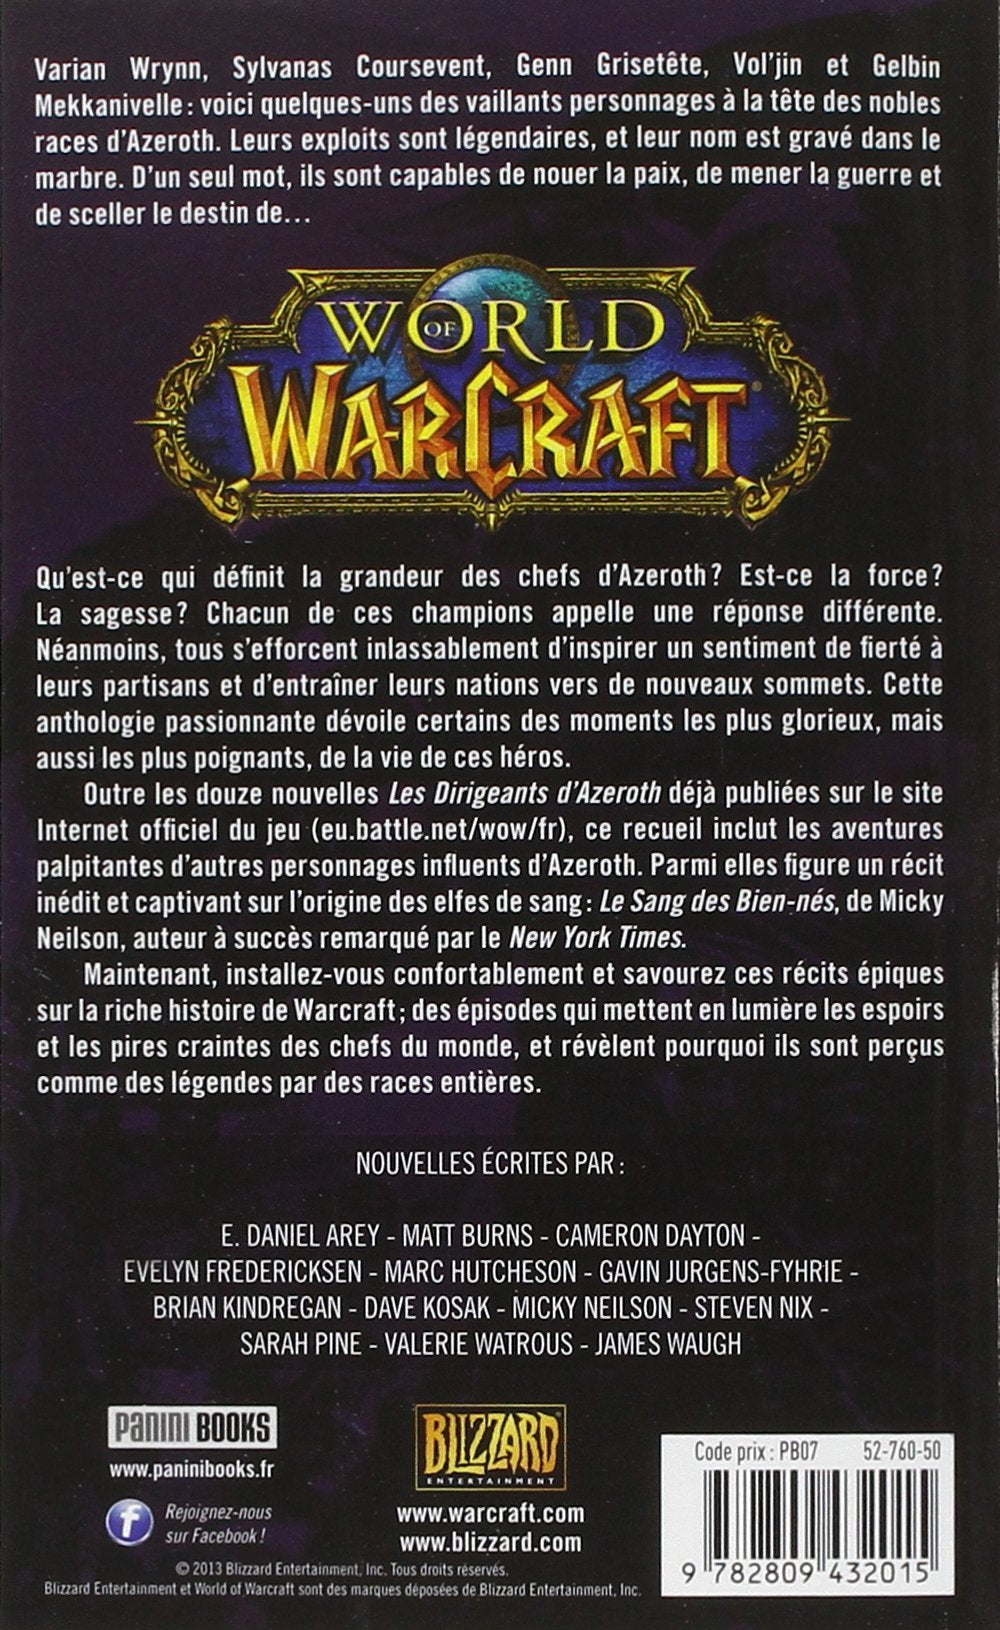 World of Warcraft : Légende (Micky Neilson)